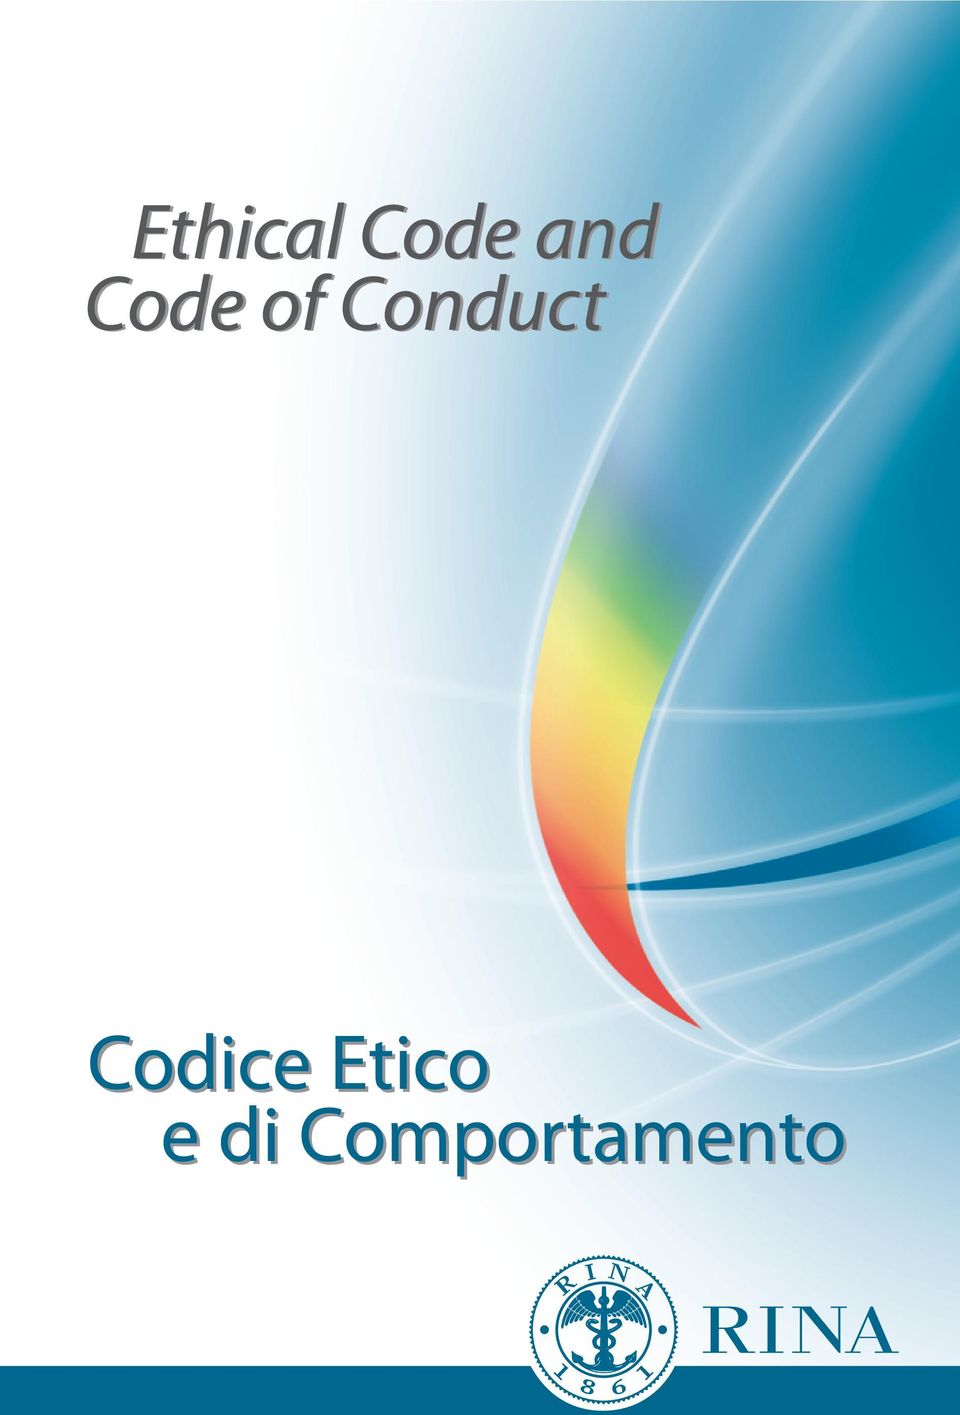 Conduct Codice